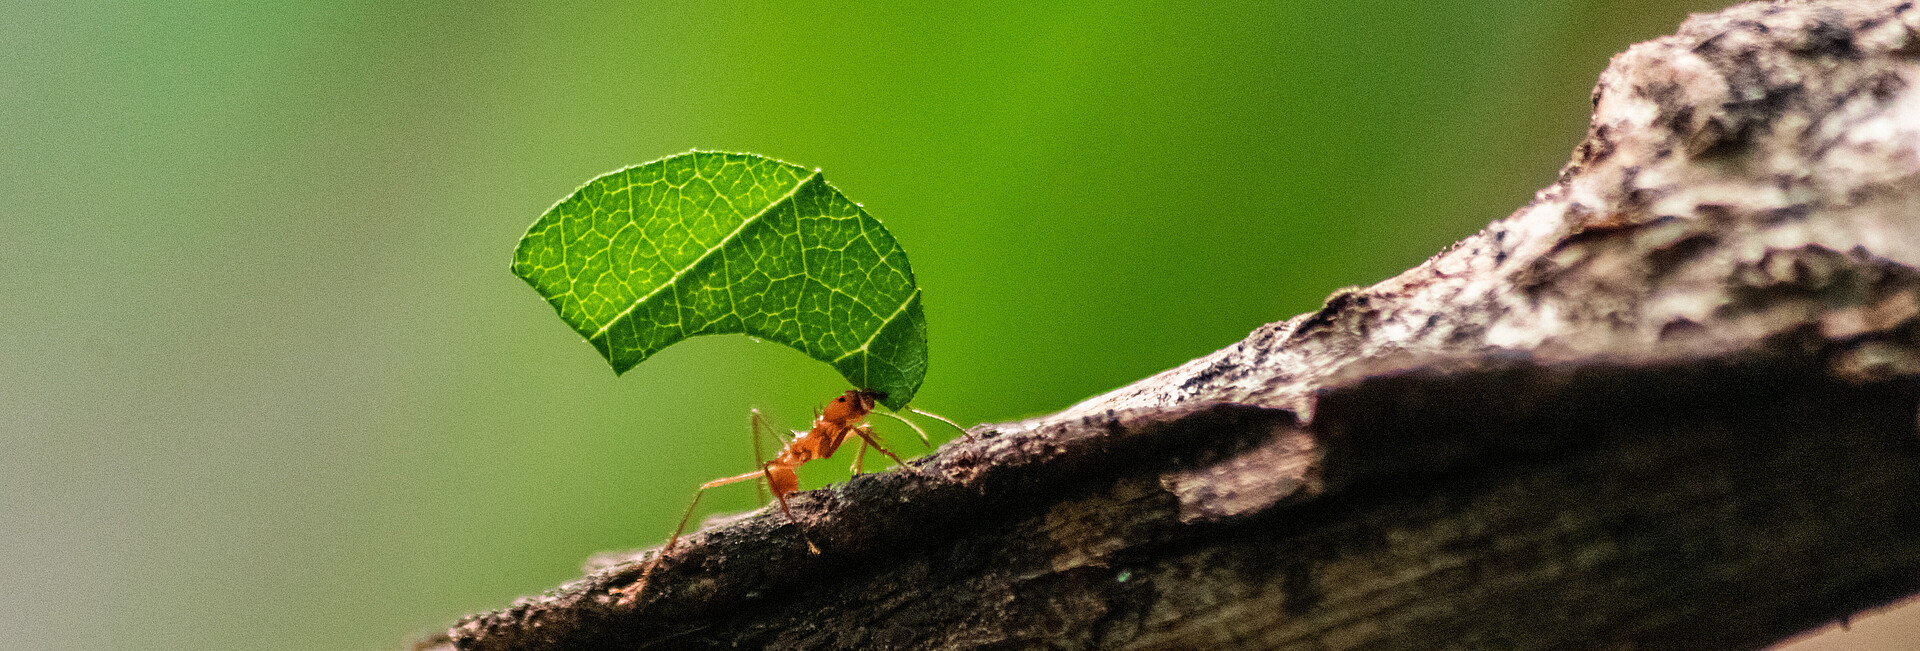 Ameise krabbelt einen Ast hoch und schleppt ein Blatt 